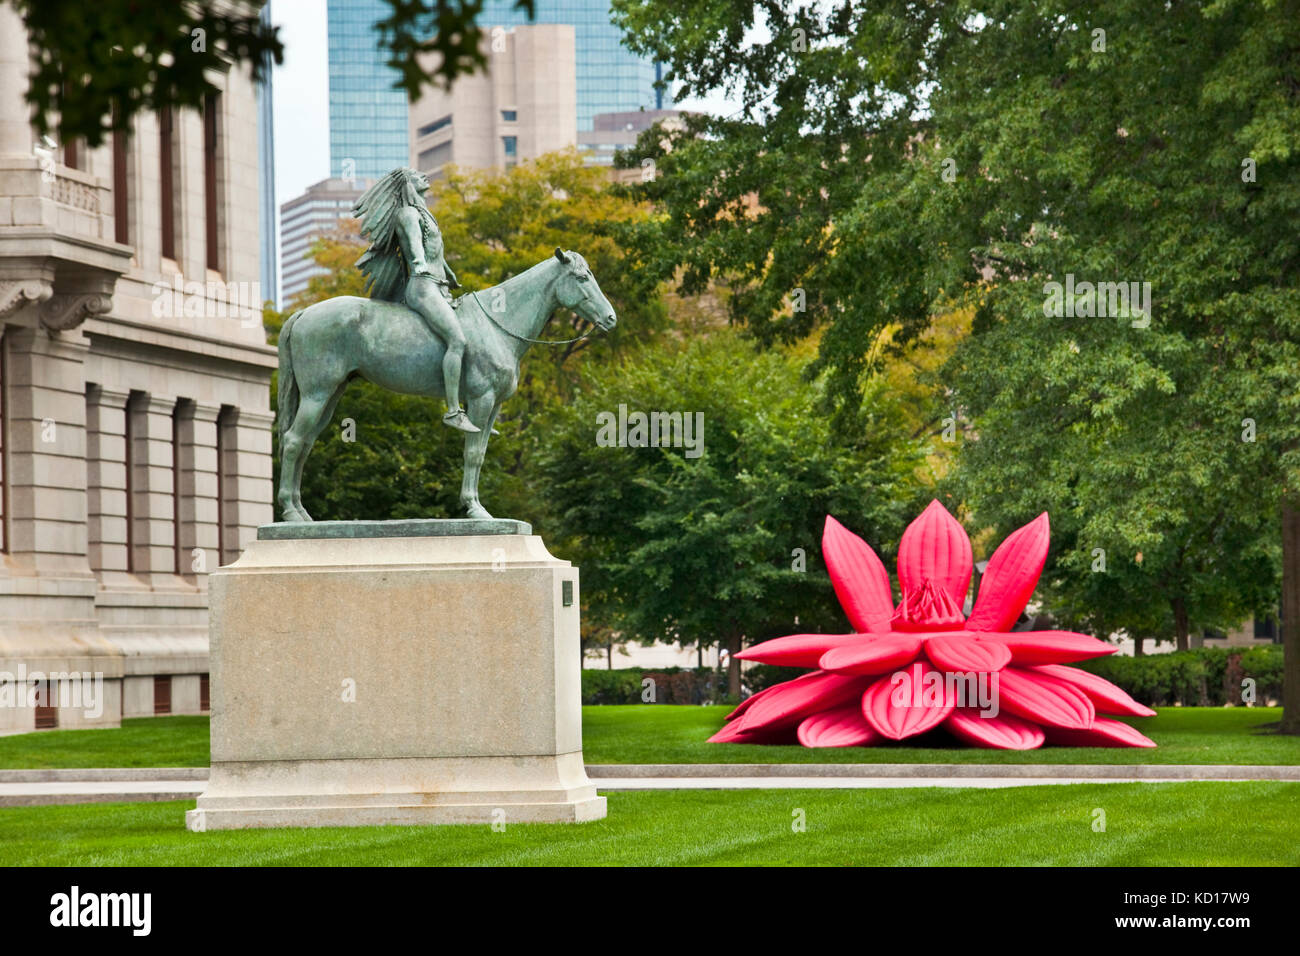 Motif devant le Musée des beaux-arts comprend une statue en bronze par le sculpteur Cyrus Edwin Dallin intitulée "Appel au Grand Esprit', et un rouge lumineux, gonflable fleur de lotus par artiste Choi Jeong-hwa. Boston, Massachussets, Etats-Unis Banque D'Images